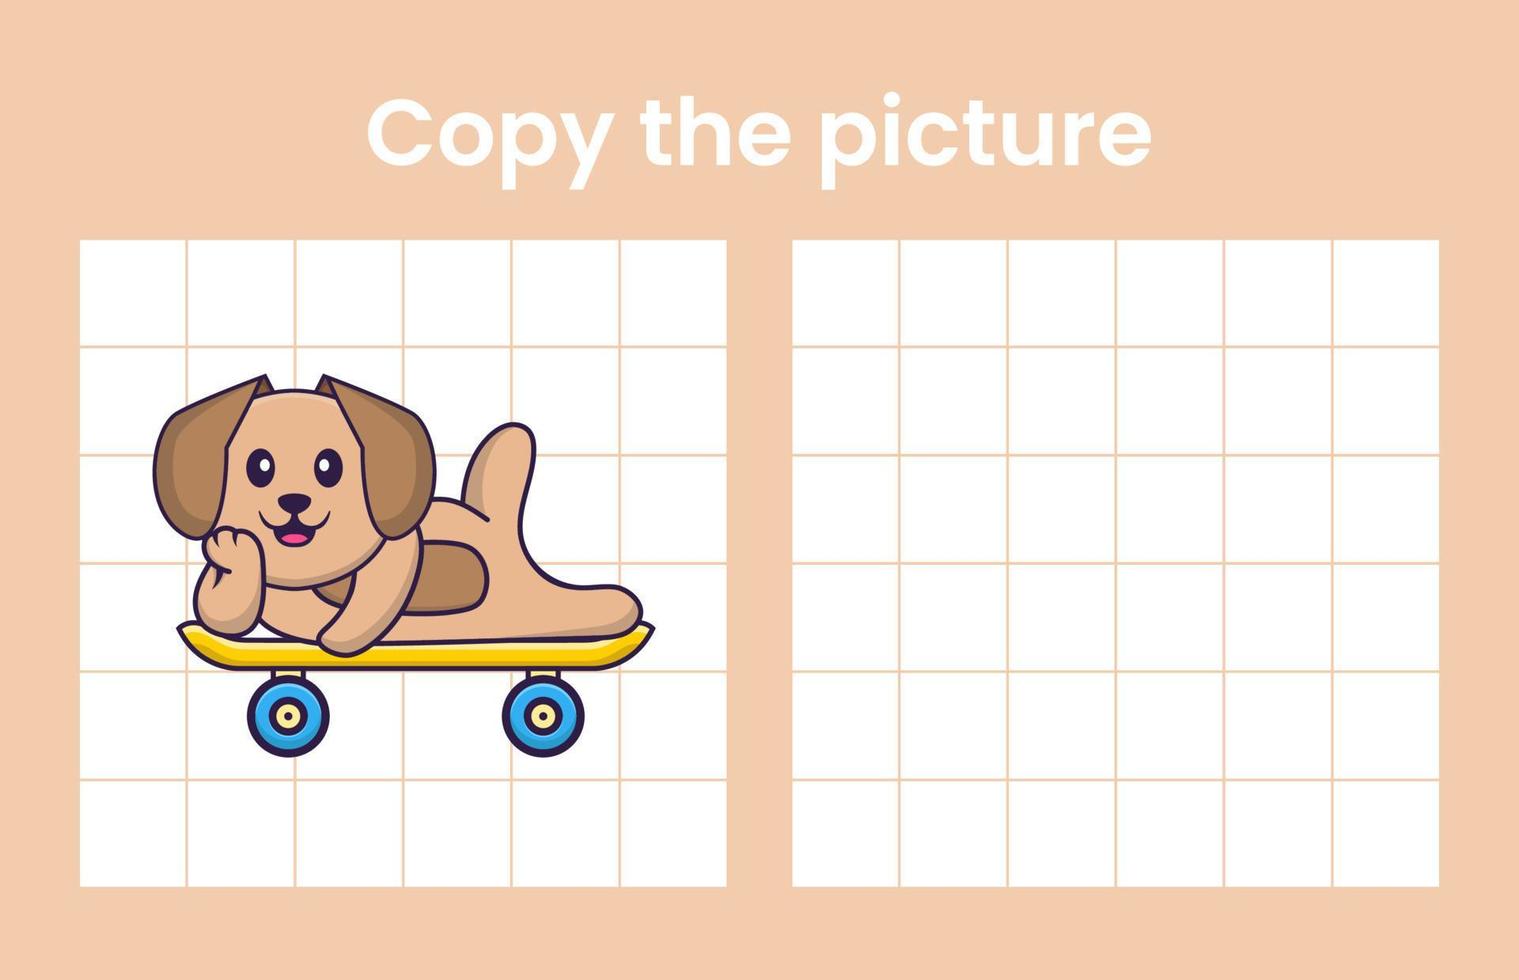 Copie la imagen de un lindo perro. juego educativo para niños. ilustración vectorial de dibujos animados vector